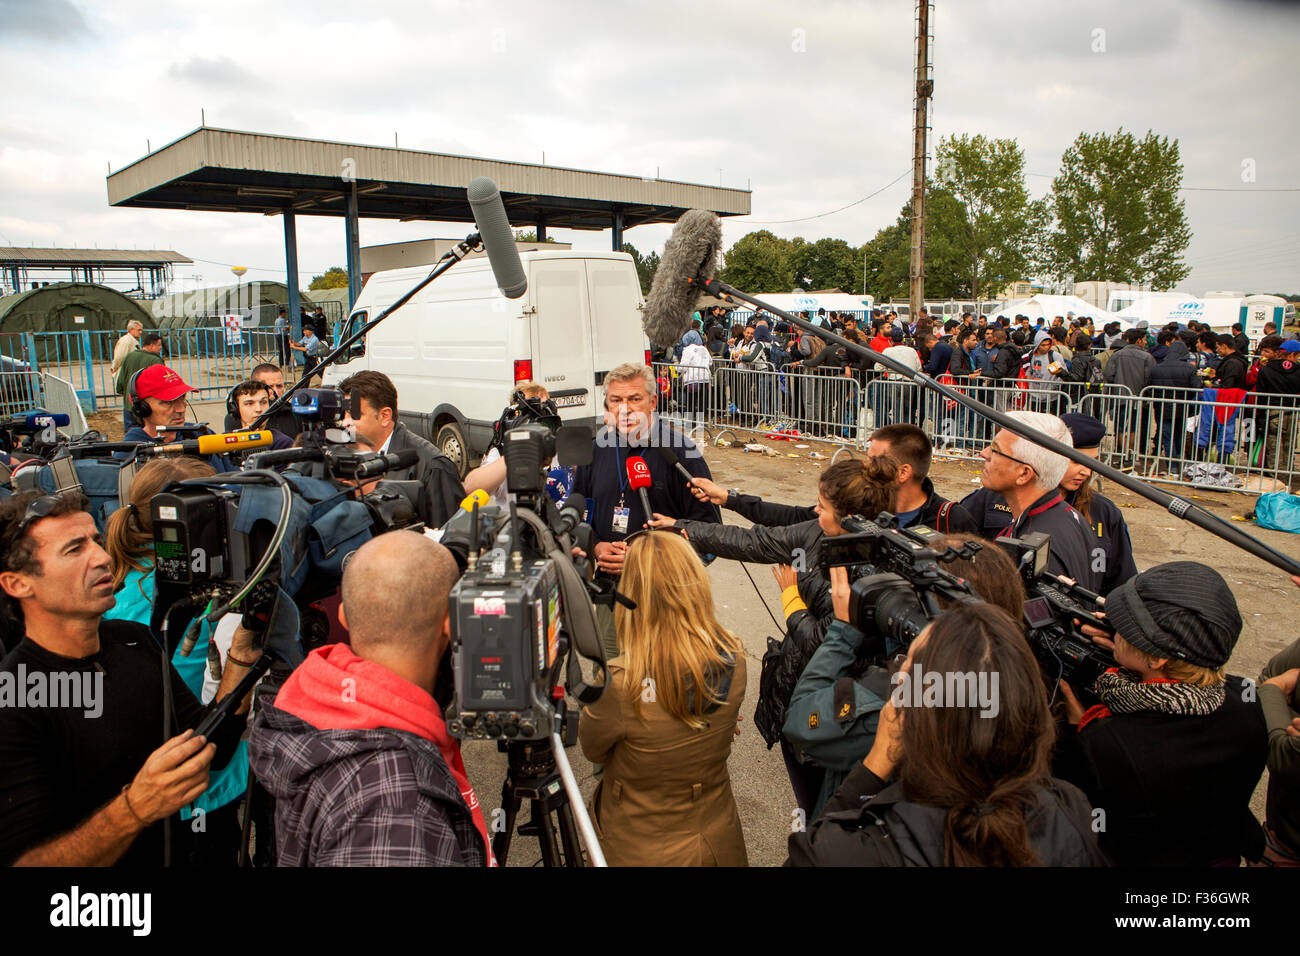 Il croato il Ministro degli Interni Ranko Ostojic tiene una conferenza stampa durante una visita alla registrazione Opotovac camp vicino al Bapksa di frontiera tra la Croazia e la Serbia che ha visto un afflusso di rifugiati. Opotovac, CROAZIA Venerdì 25 Settembre 2015 Foto Stock